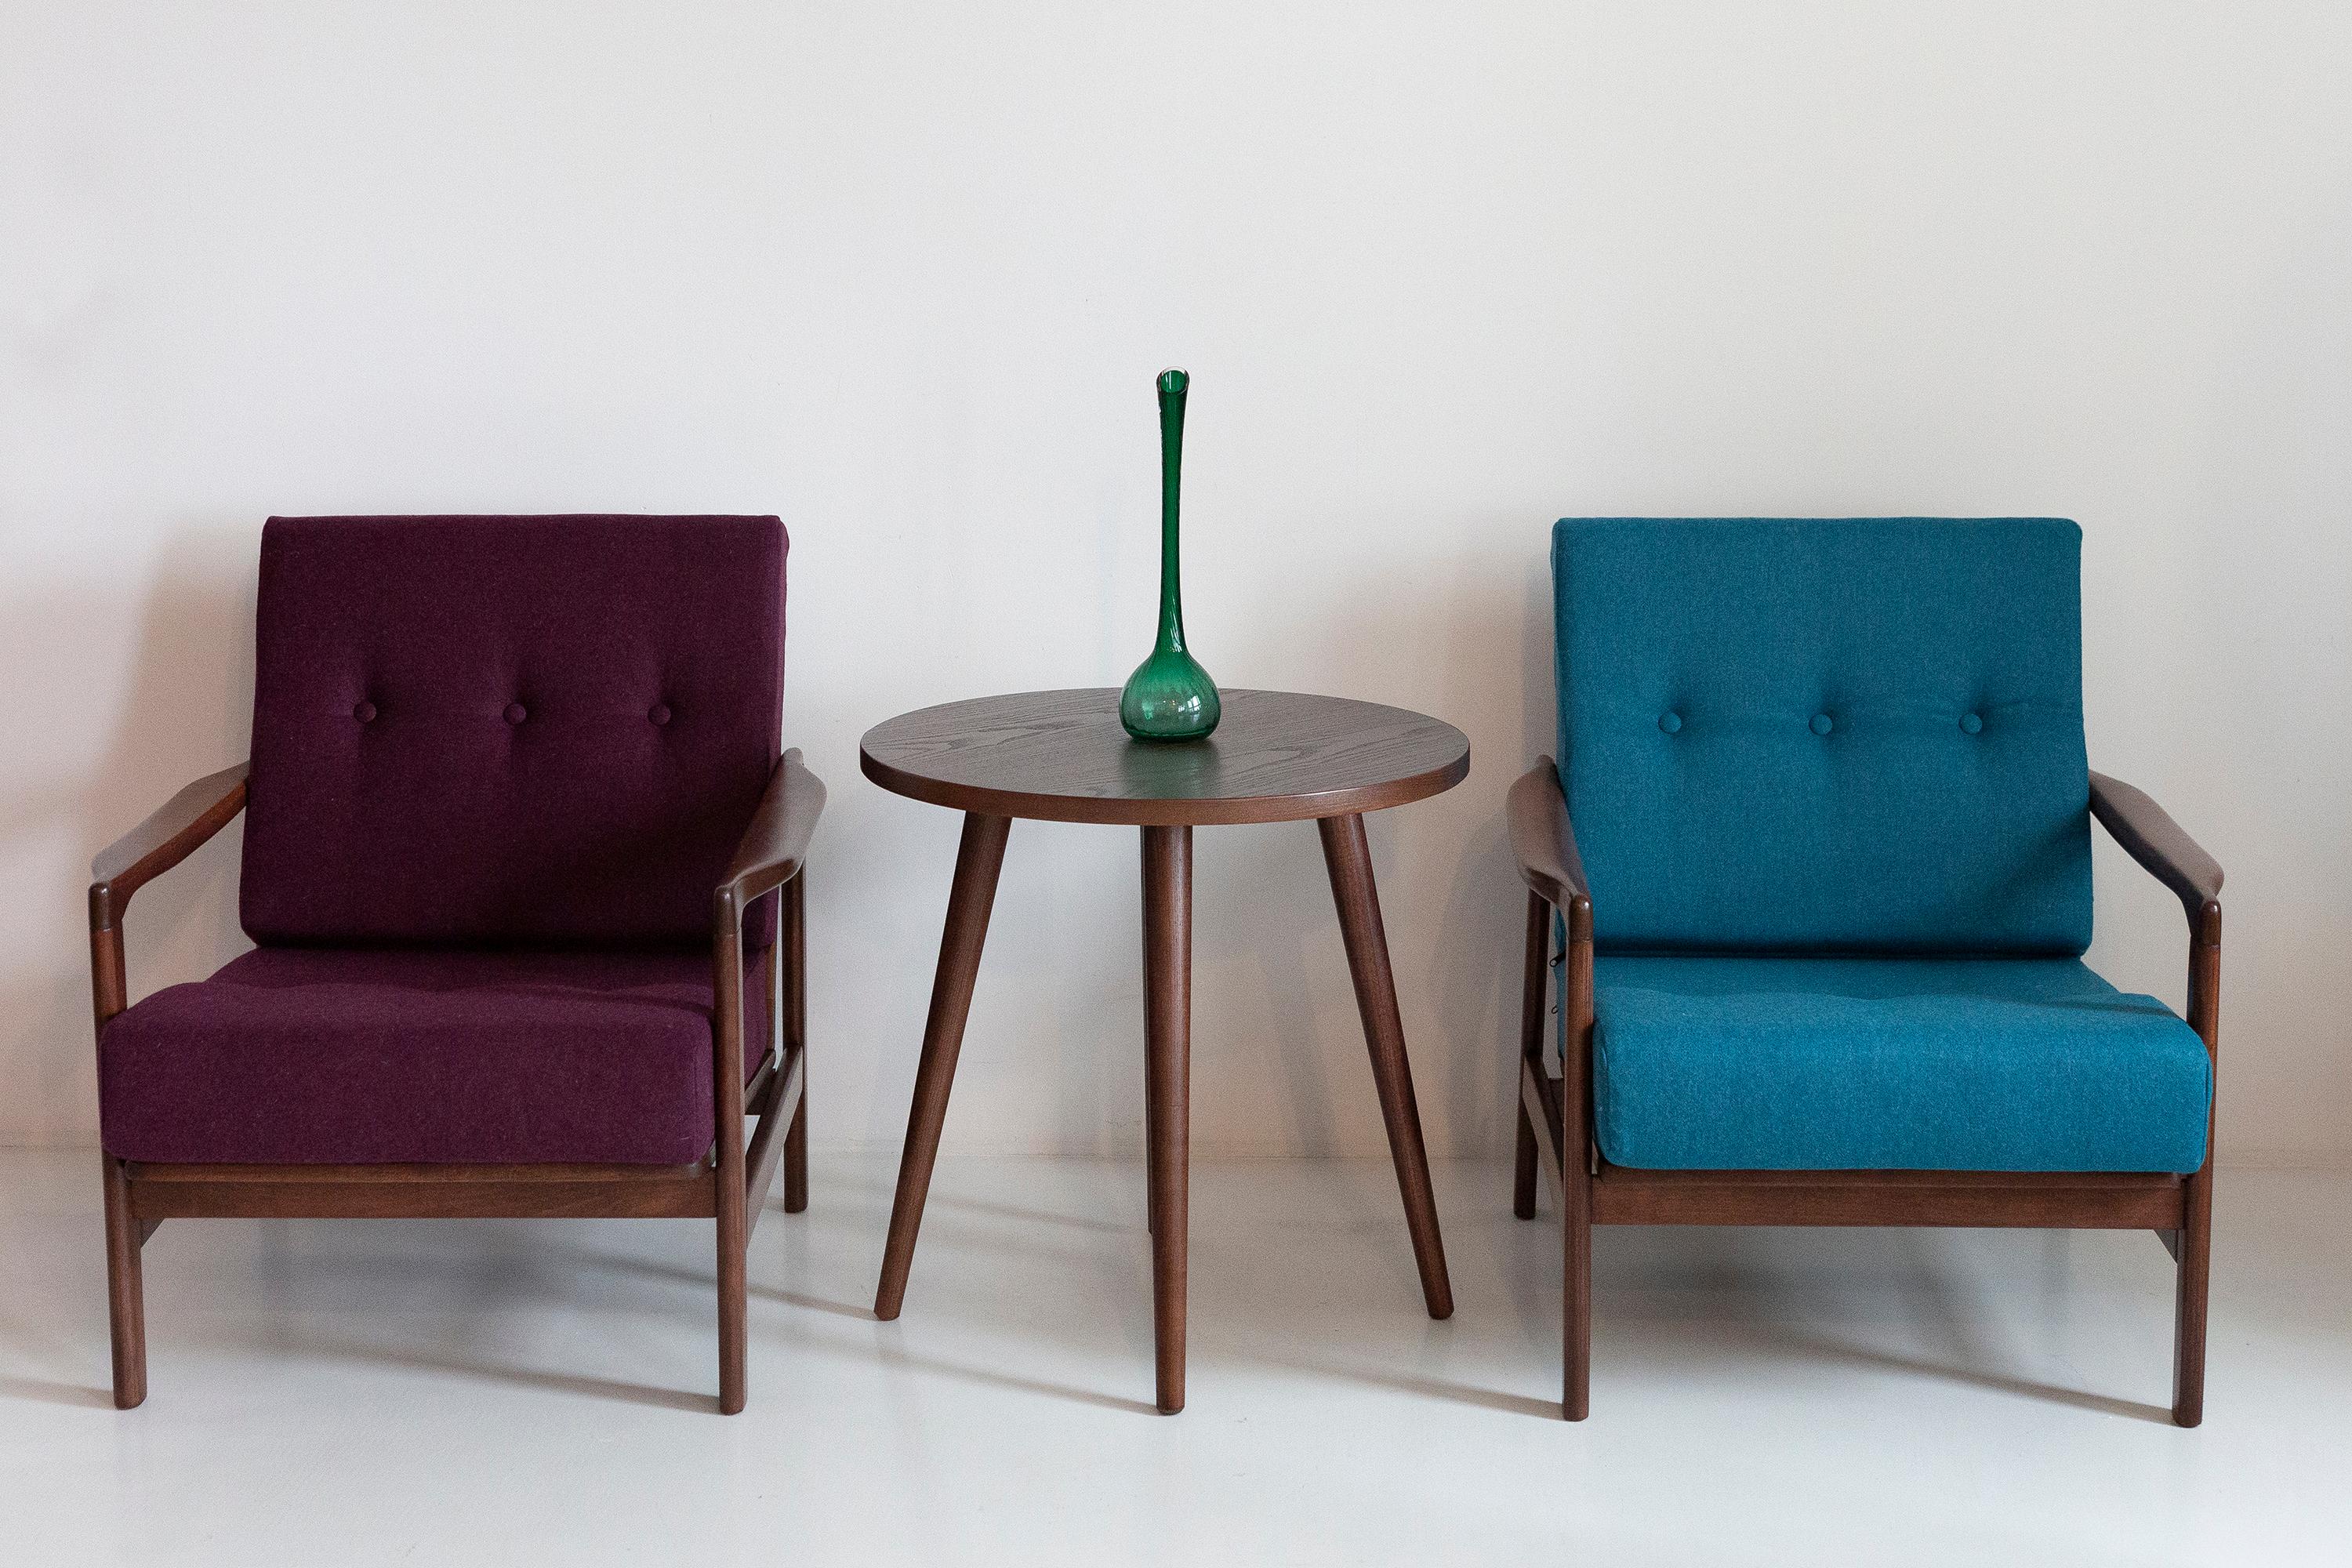 Der Sessel B-7522 wurde in den 1960er Jahren von Zenon Baczyk entworfen und von den Swarzedz-Möbelfabriken in Polen hergestellt. Dies ist original Vintage-Sessel nach der Renovierung, sie sind nicht neu! 

Die Möbel sind in perfektem Zustand,